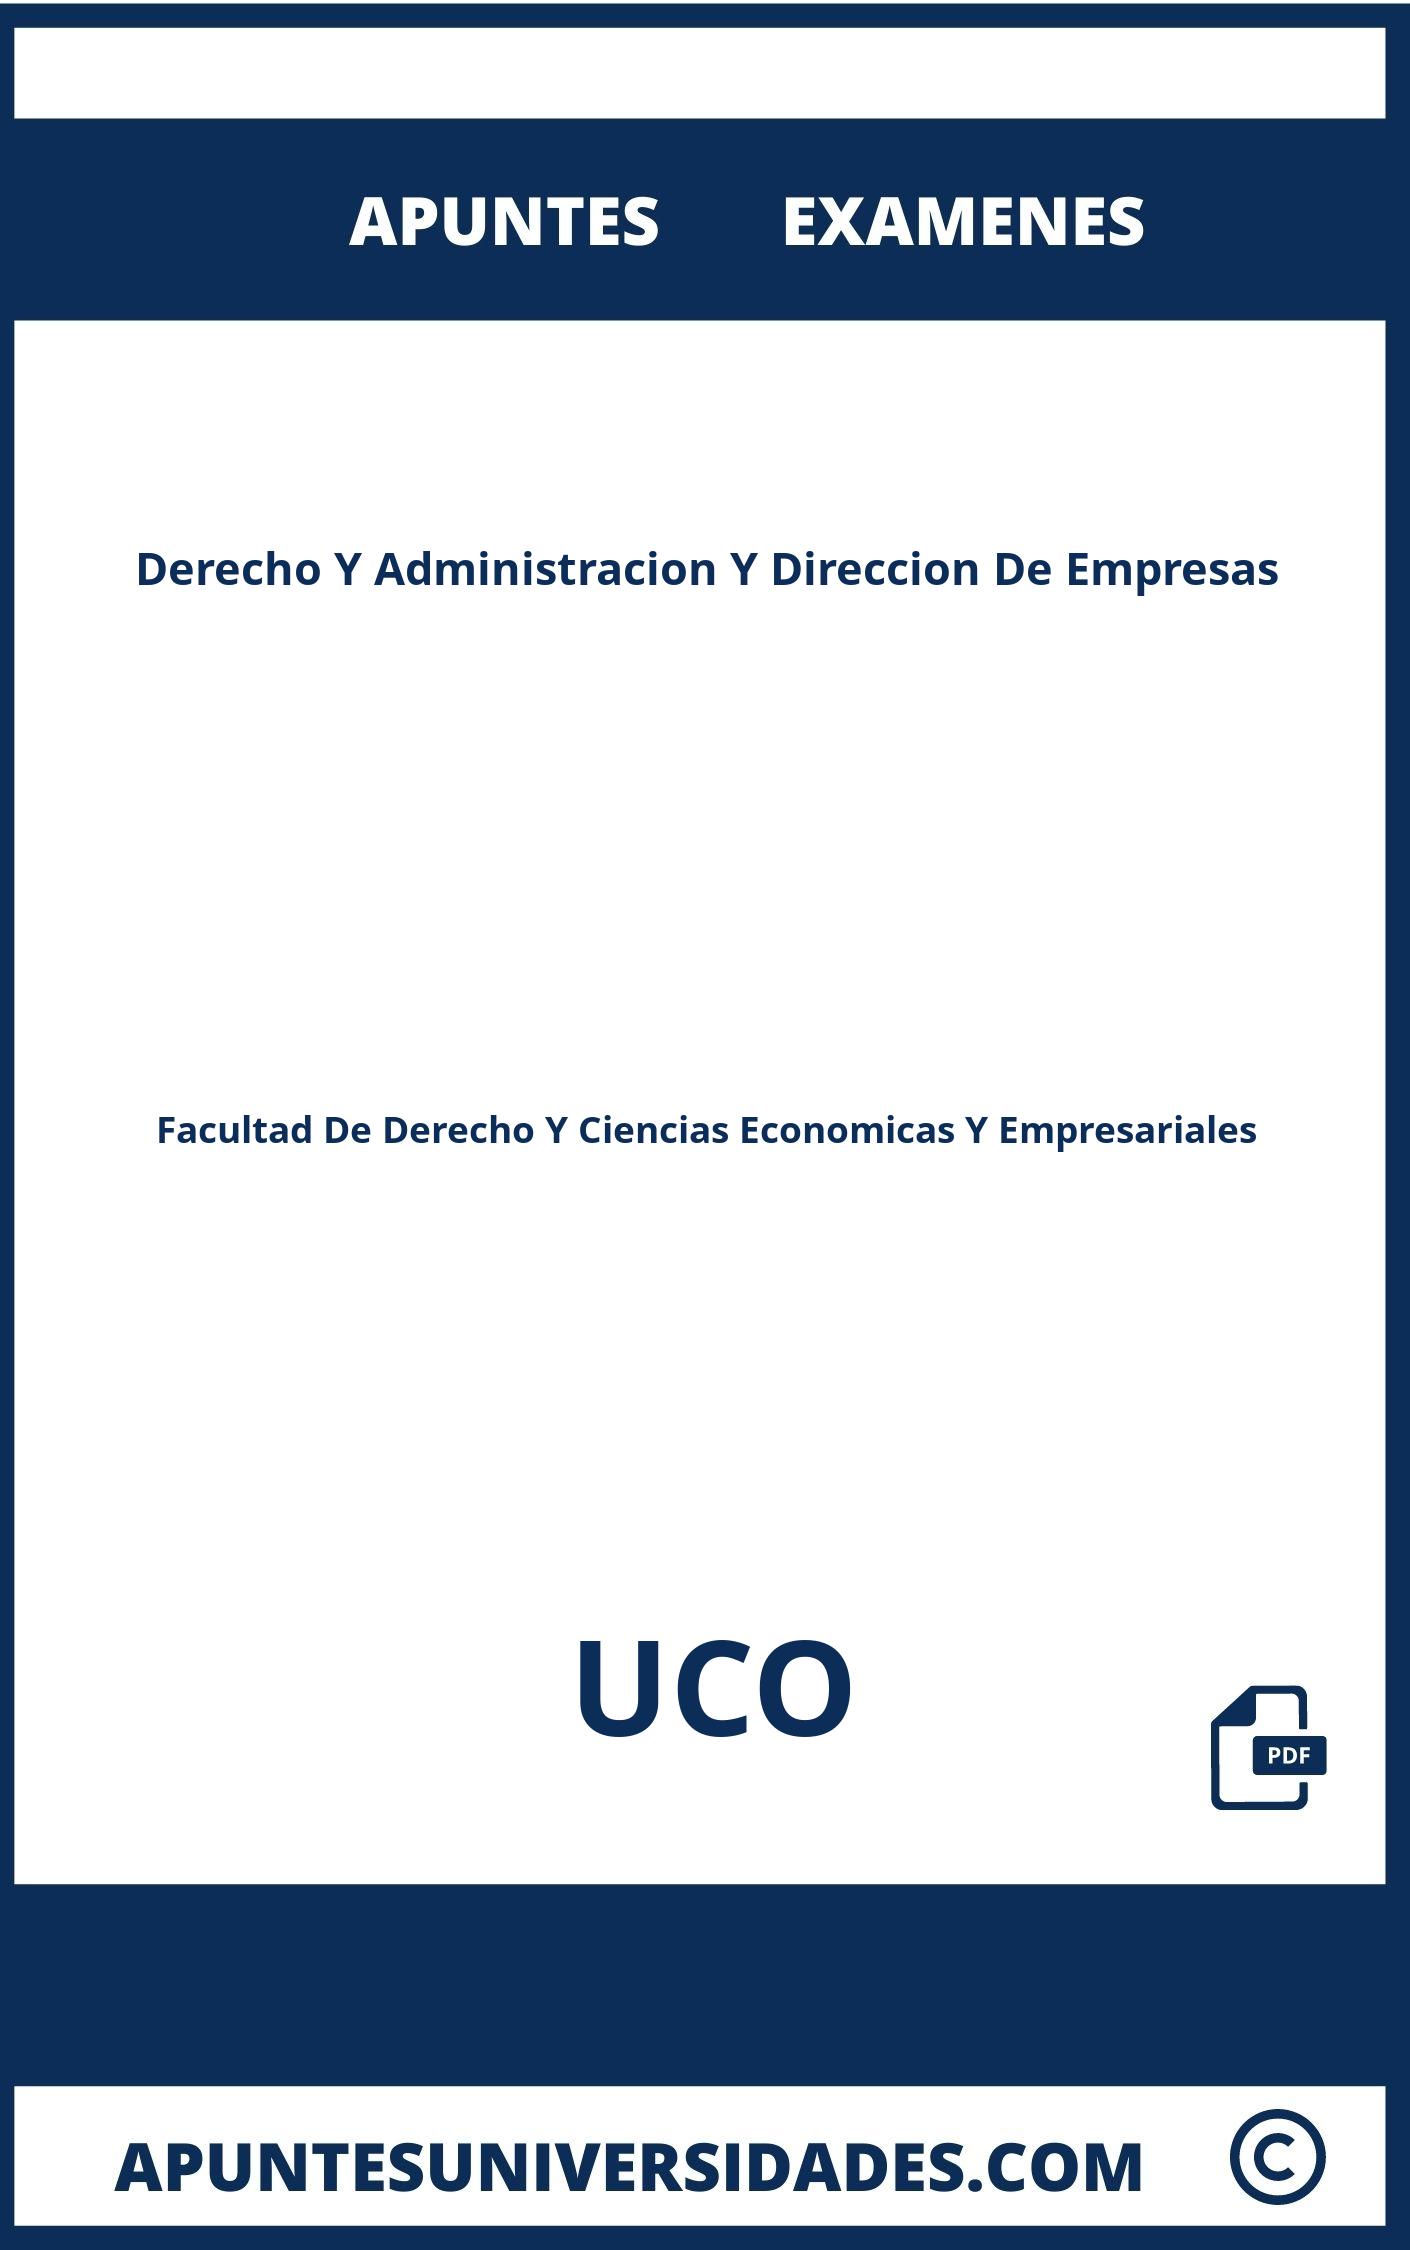 Examenes y Apuntes Derecho Y Administracion Y Direccion De Empresas UCO